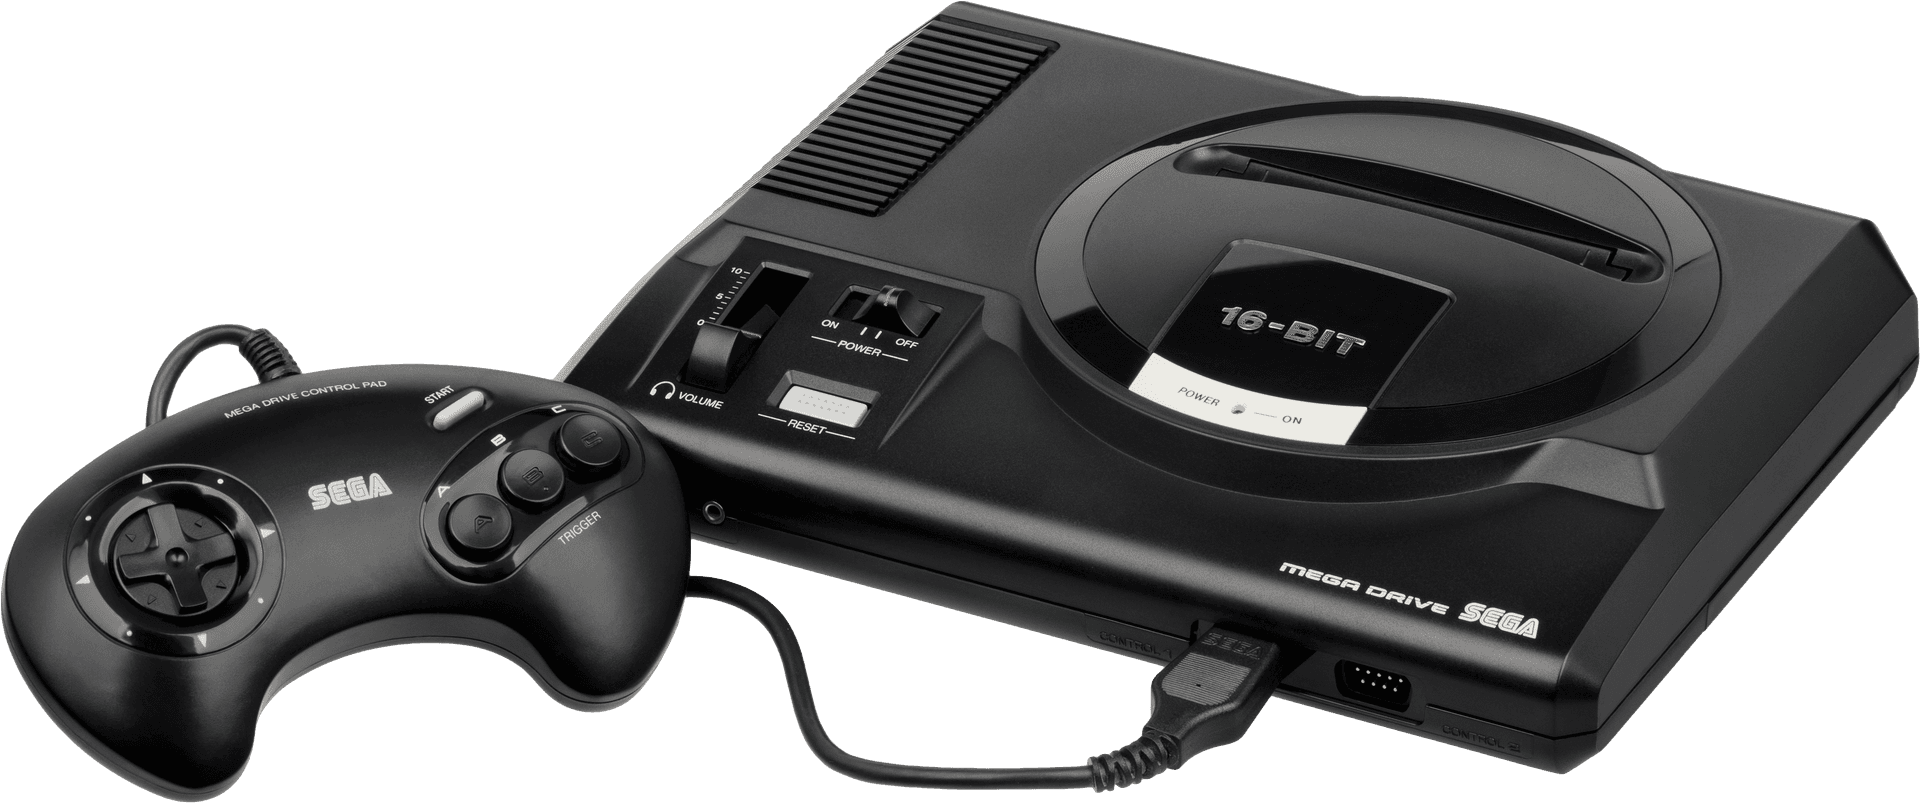 Sega Mega Drive Consoleand Controller PNG